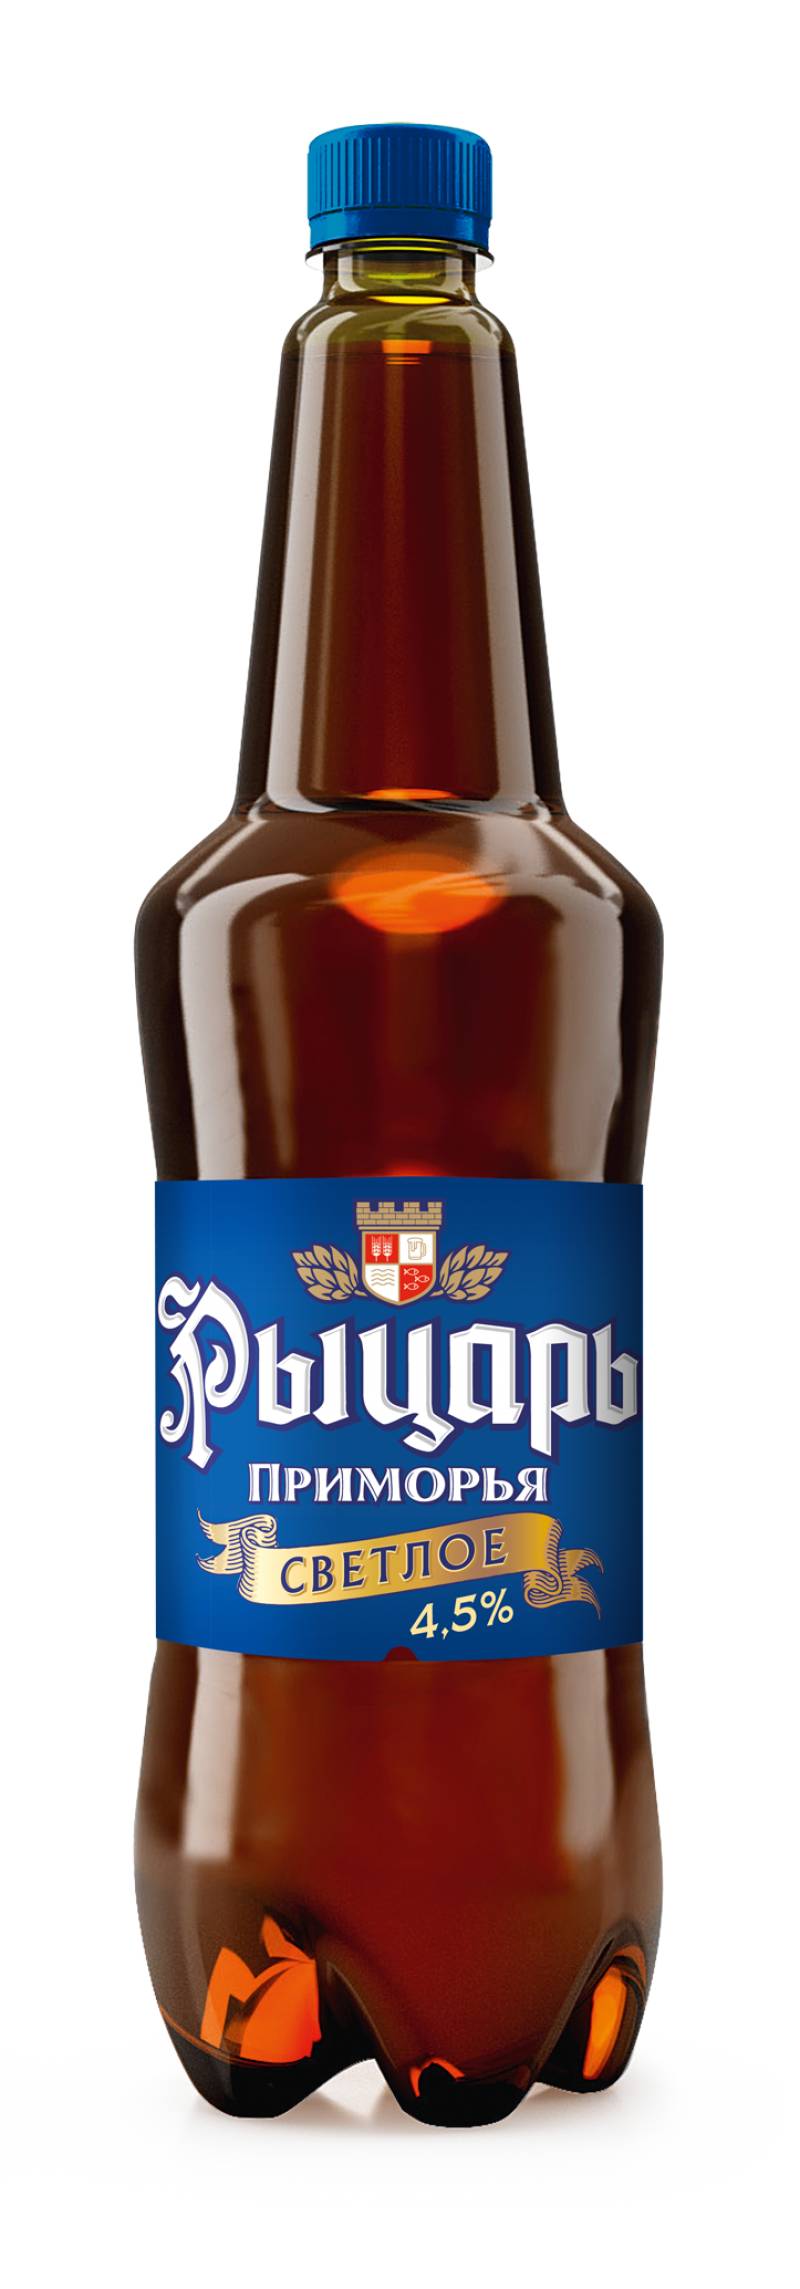 Пиво Рыцарь Приморья (светлое)1,35 л. (Россия)